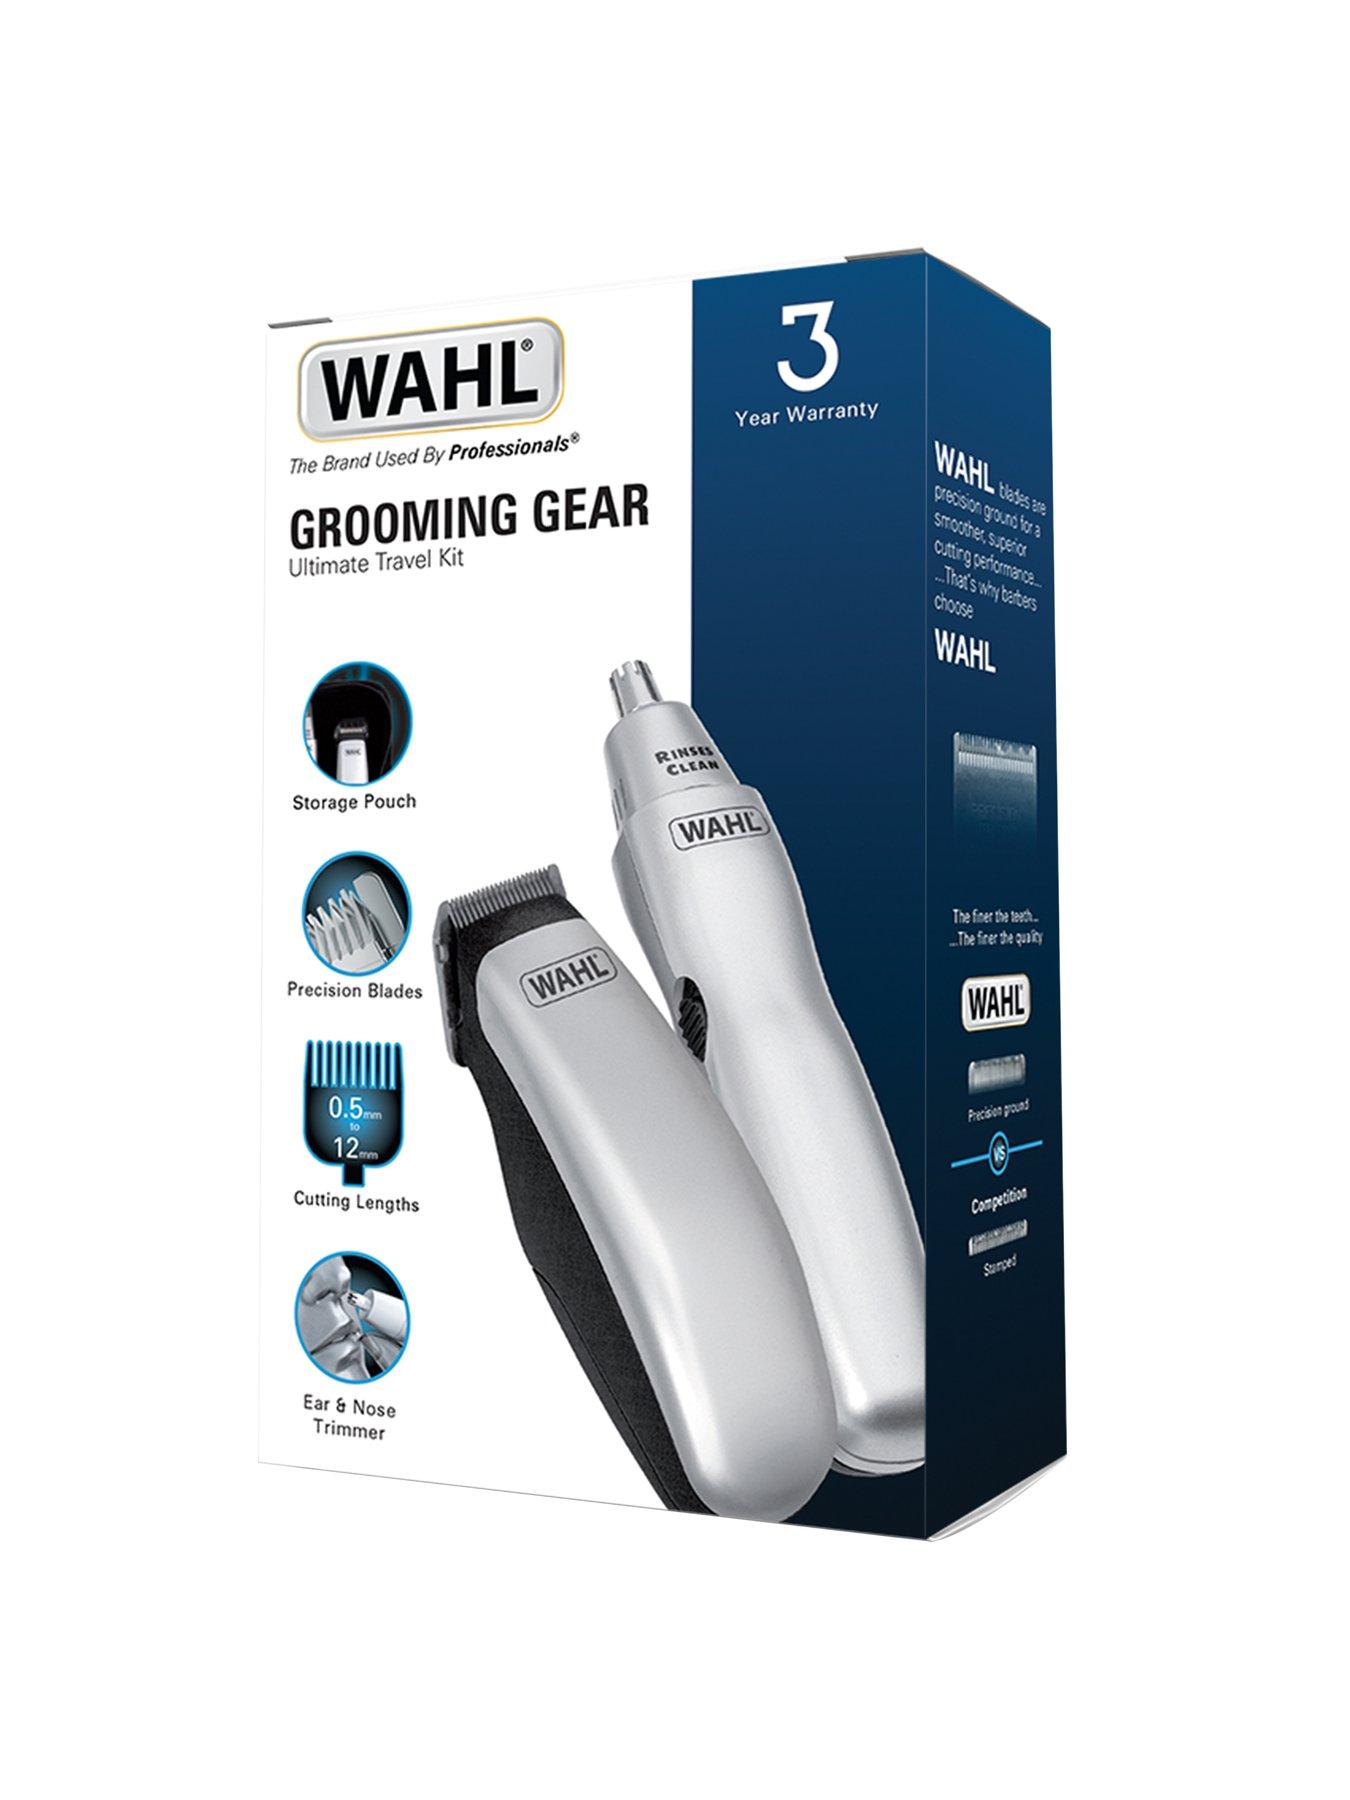 wahl grooming gear set